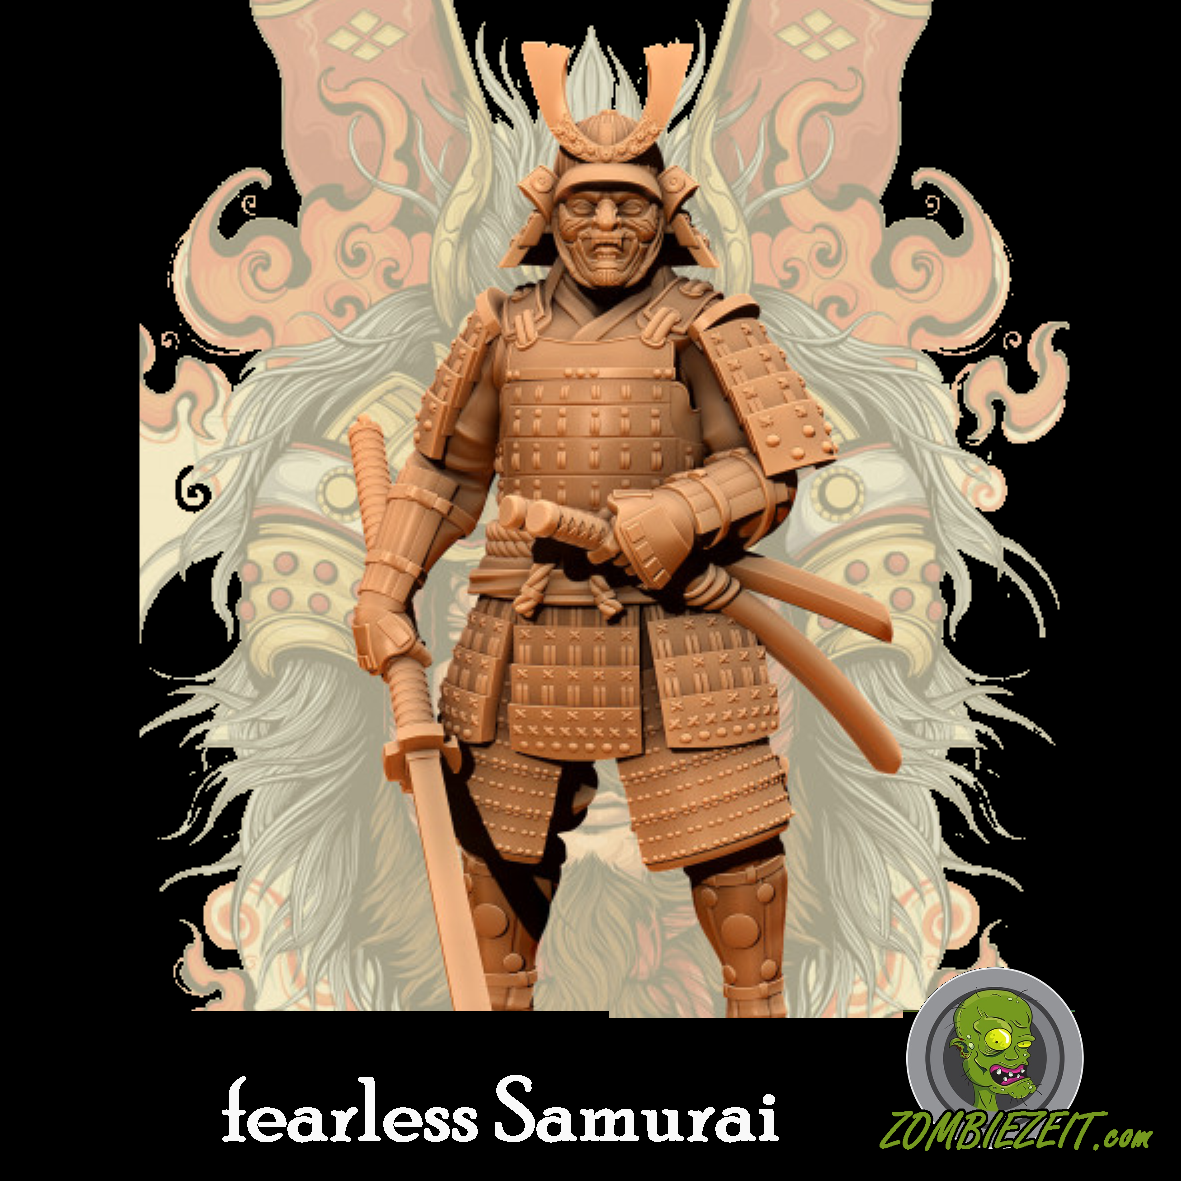 fearöess Samurai